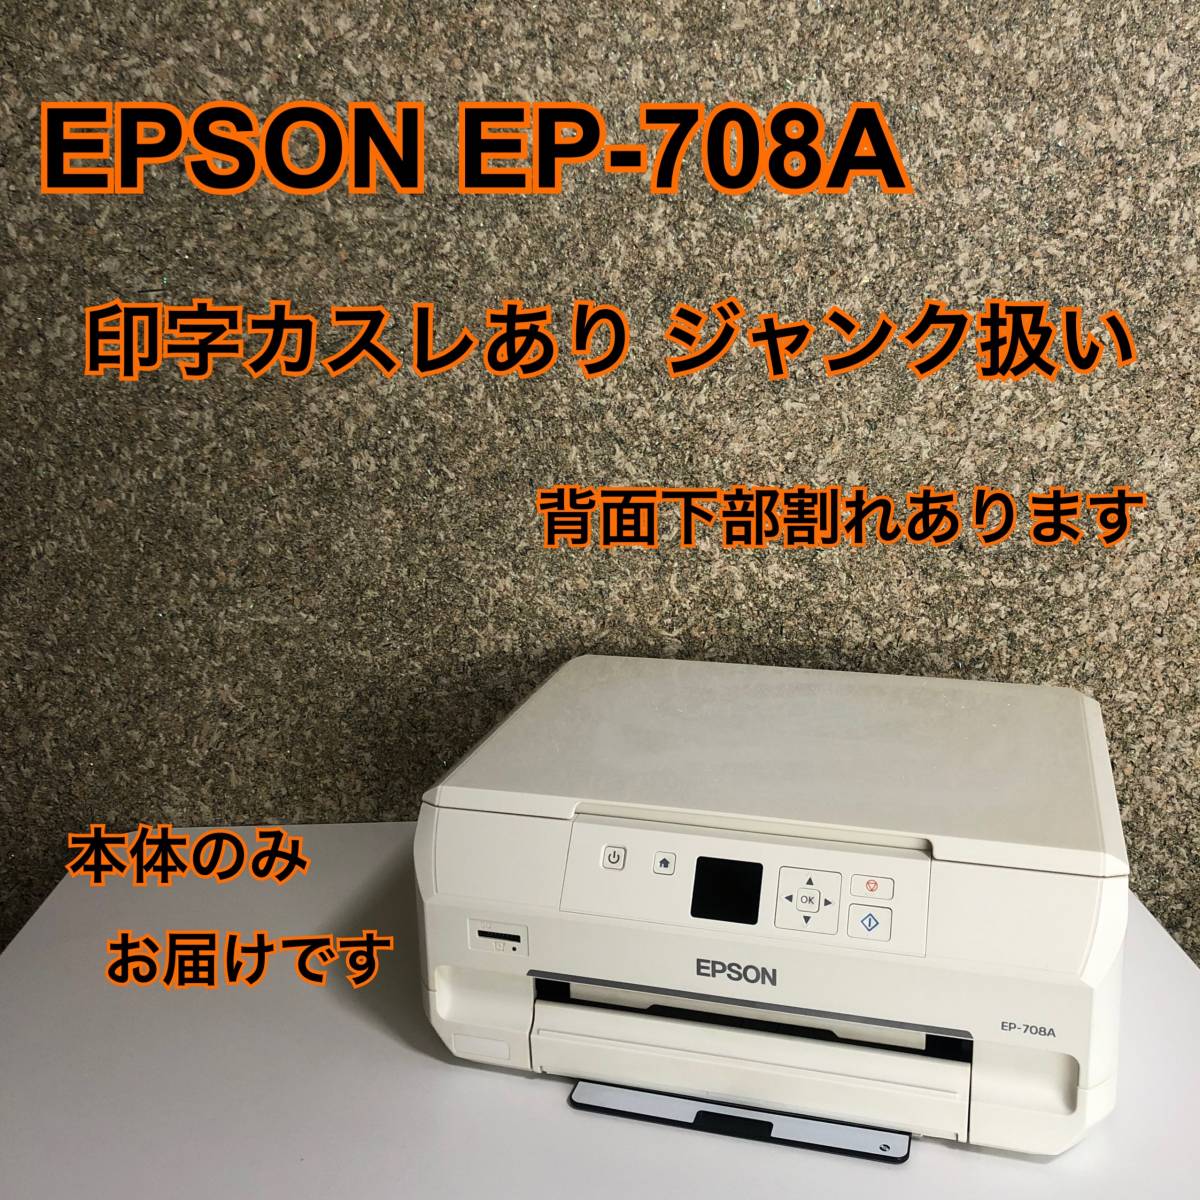 新作爆買い】 EPSON EP-708A 2016年製 プリンター インクジェット複合